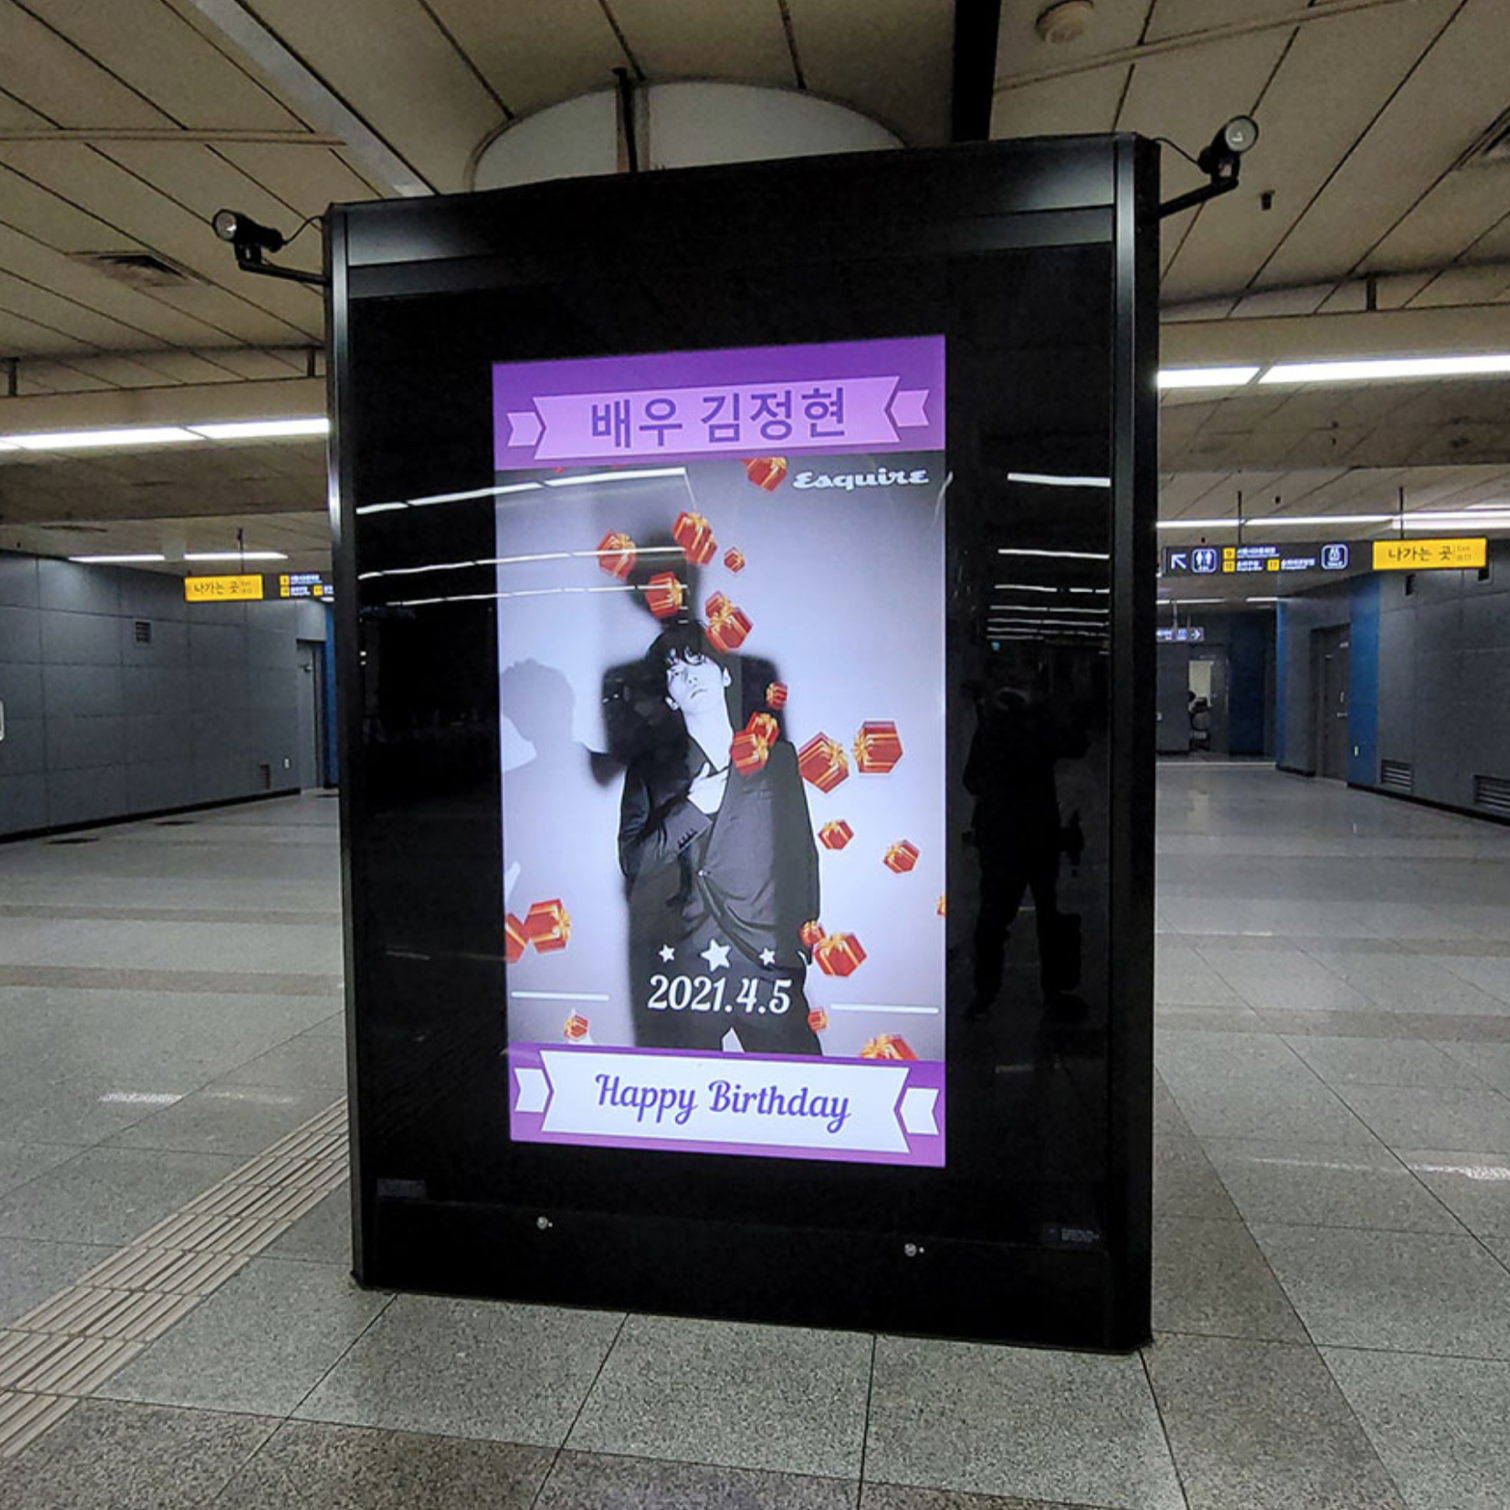 김정현 팬클럽 지하철 광고진행